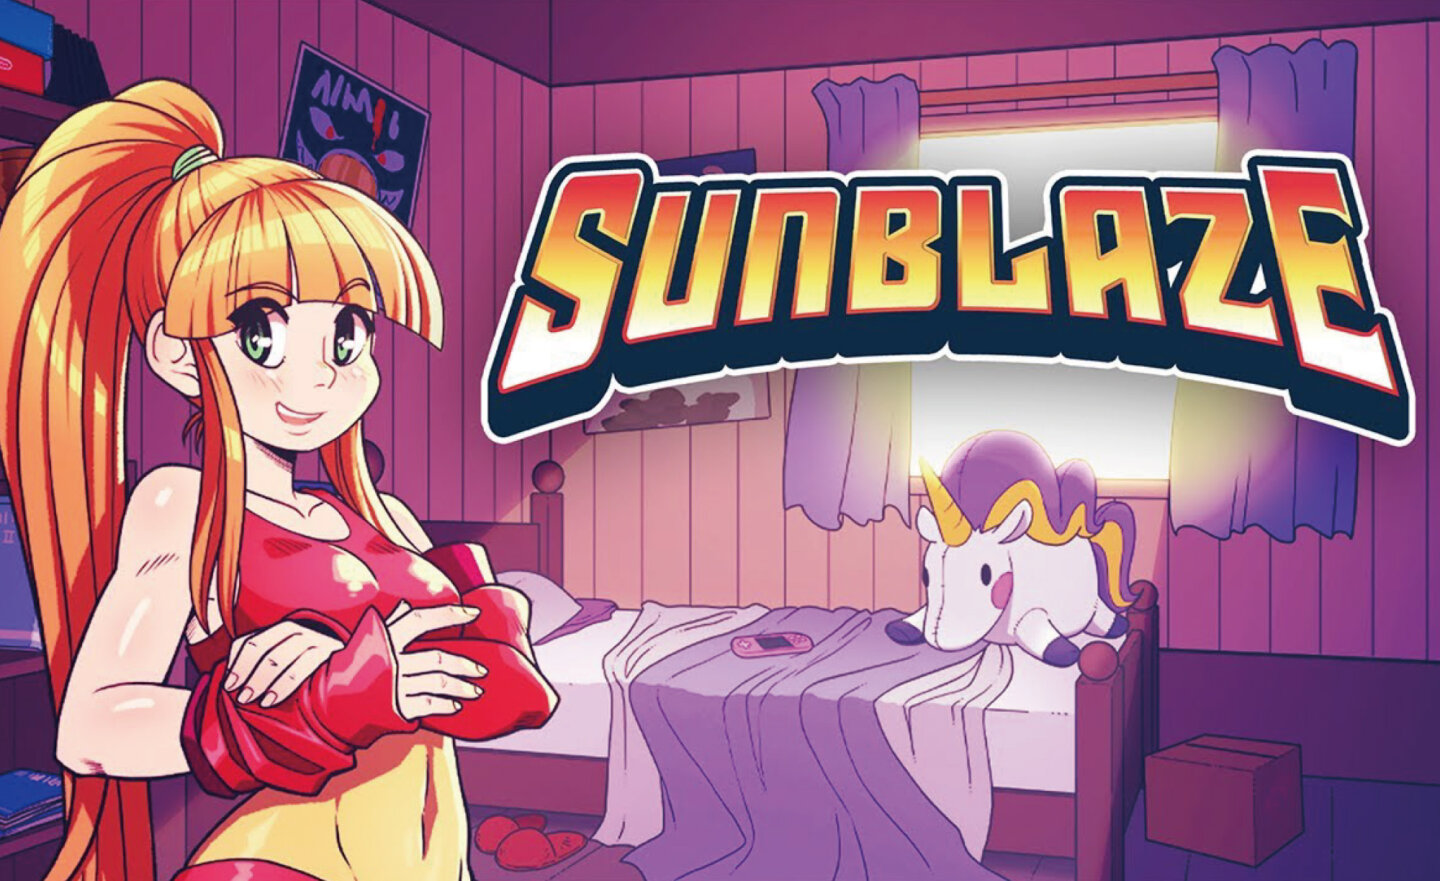 【限時免費】GOG 平台放送橫向卷軸遊戲《Sunblaze》，領取時間至 6 月 14 日 06:00 截止